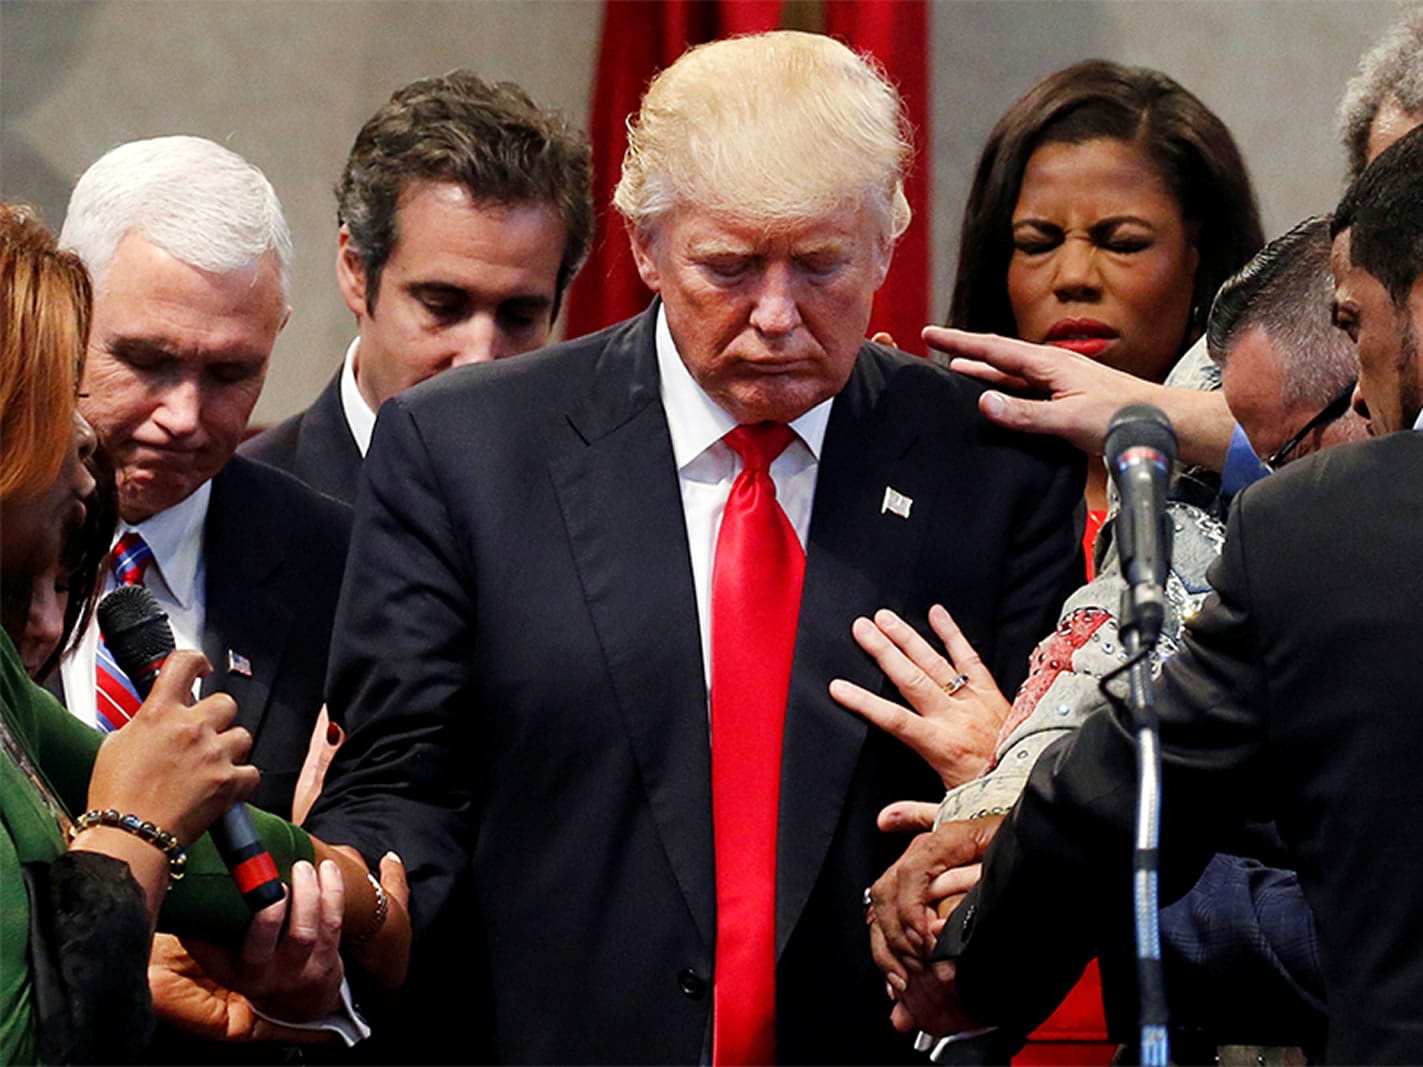 Evangélicos da TV cristã estimulam apoio a Trump com mensagem messiânica